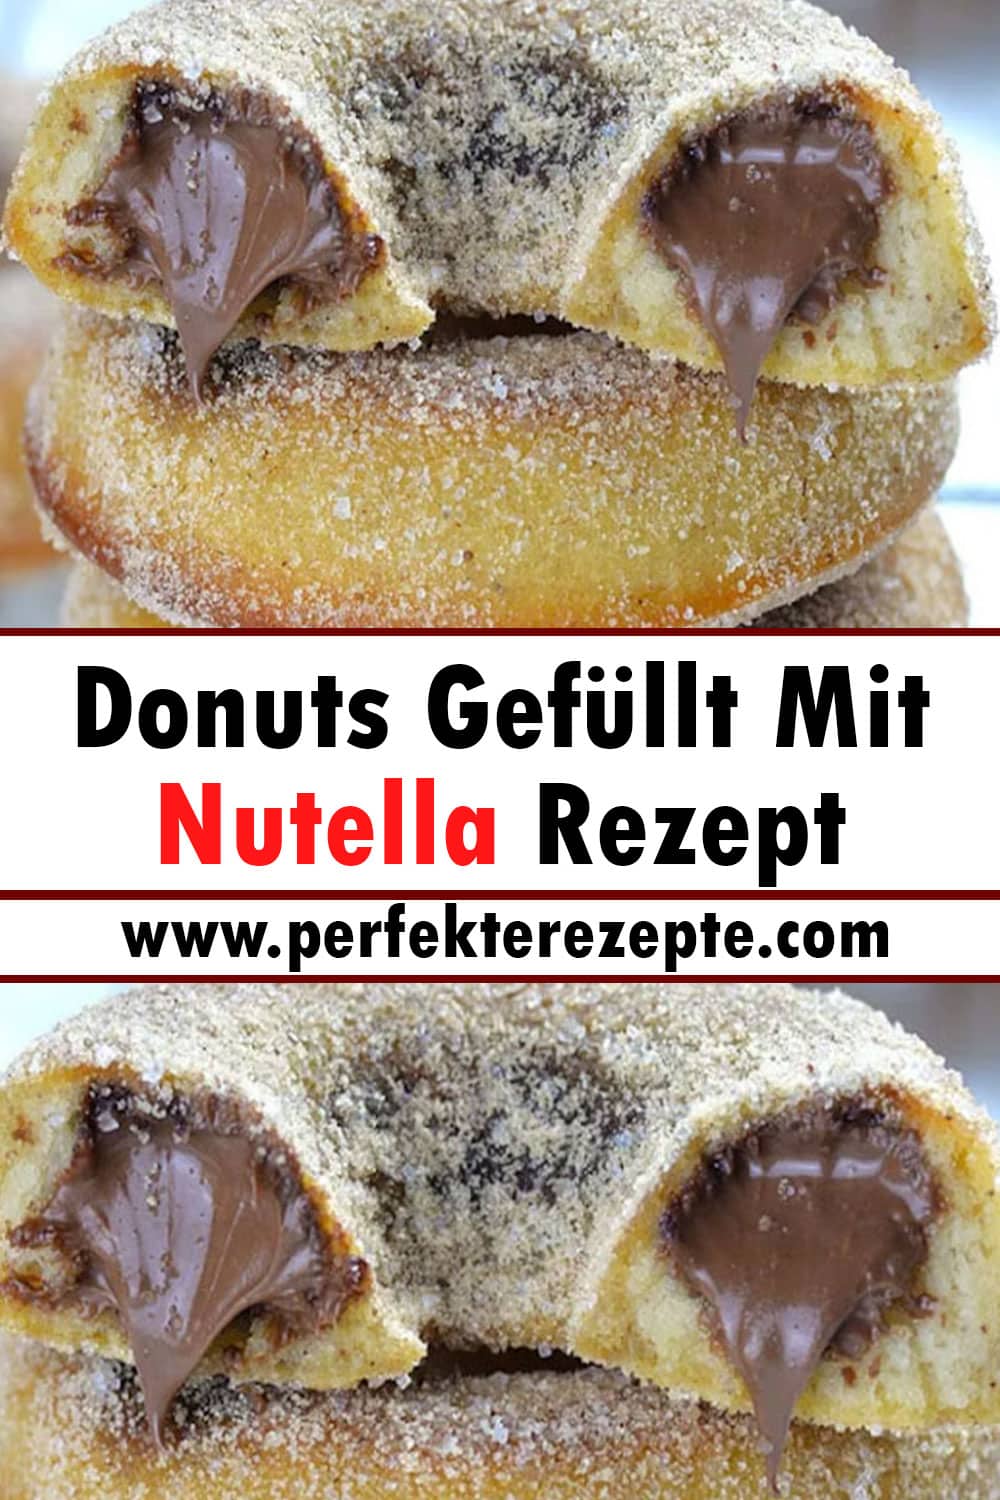 Donuts Gefüllt Mit Nutella Rezept